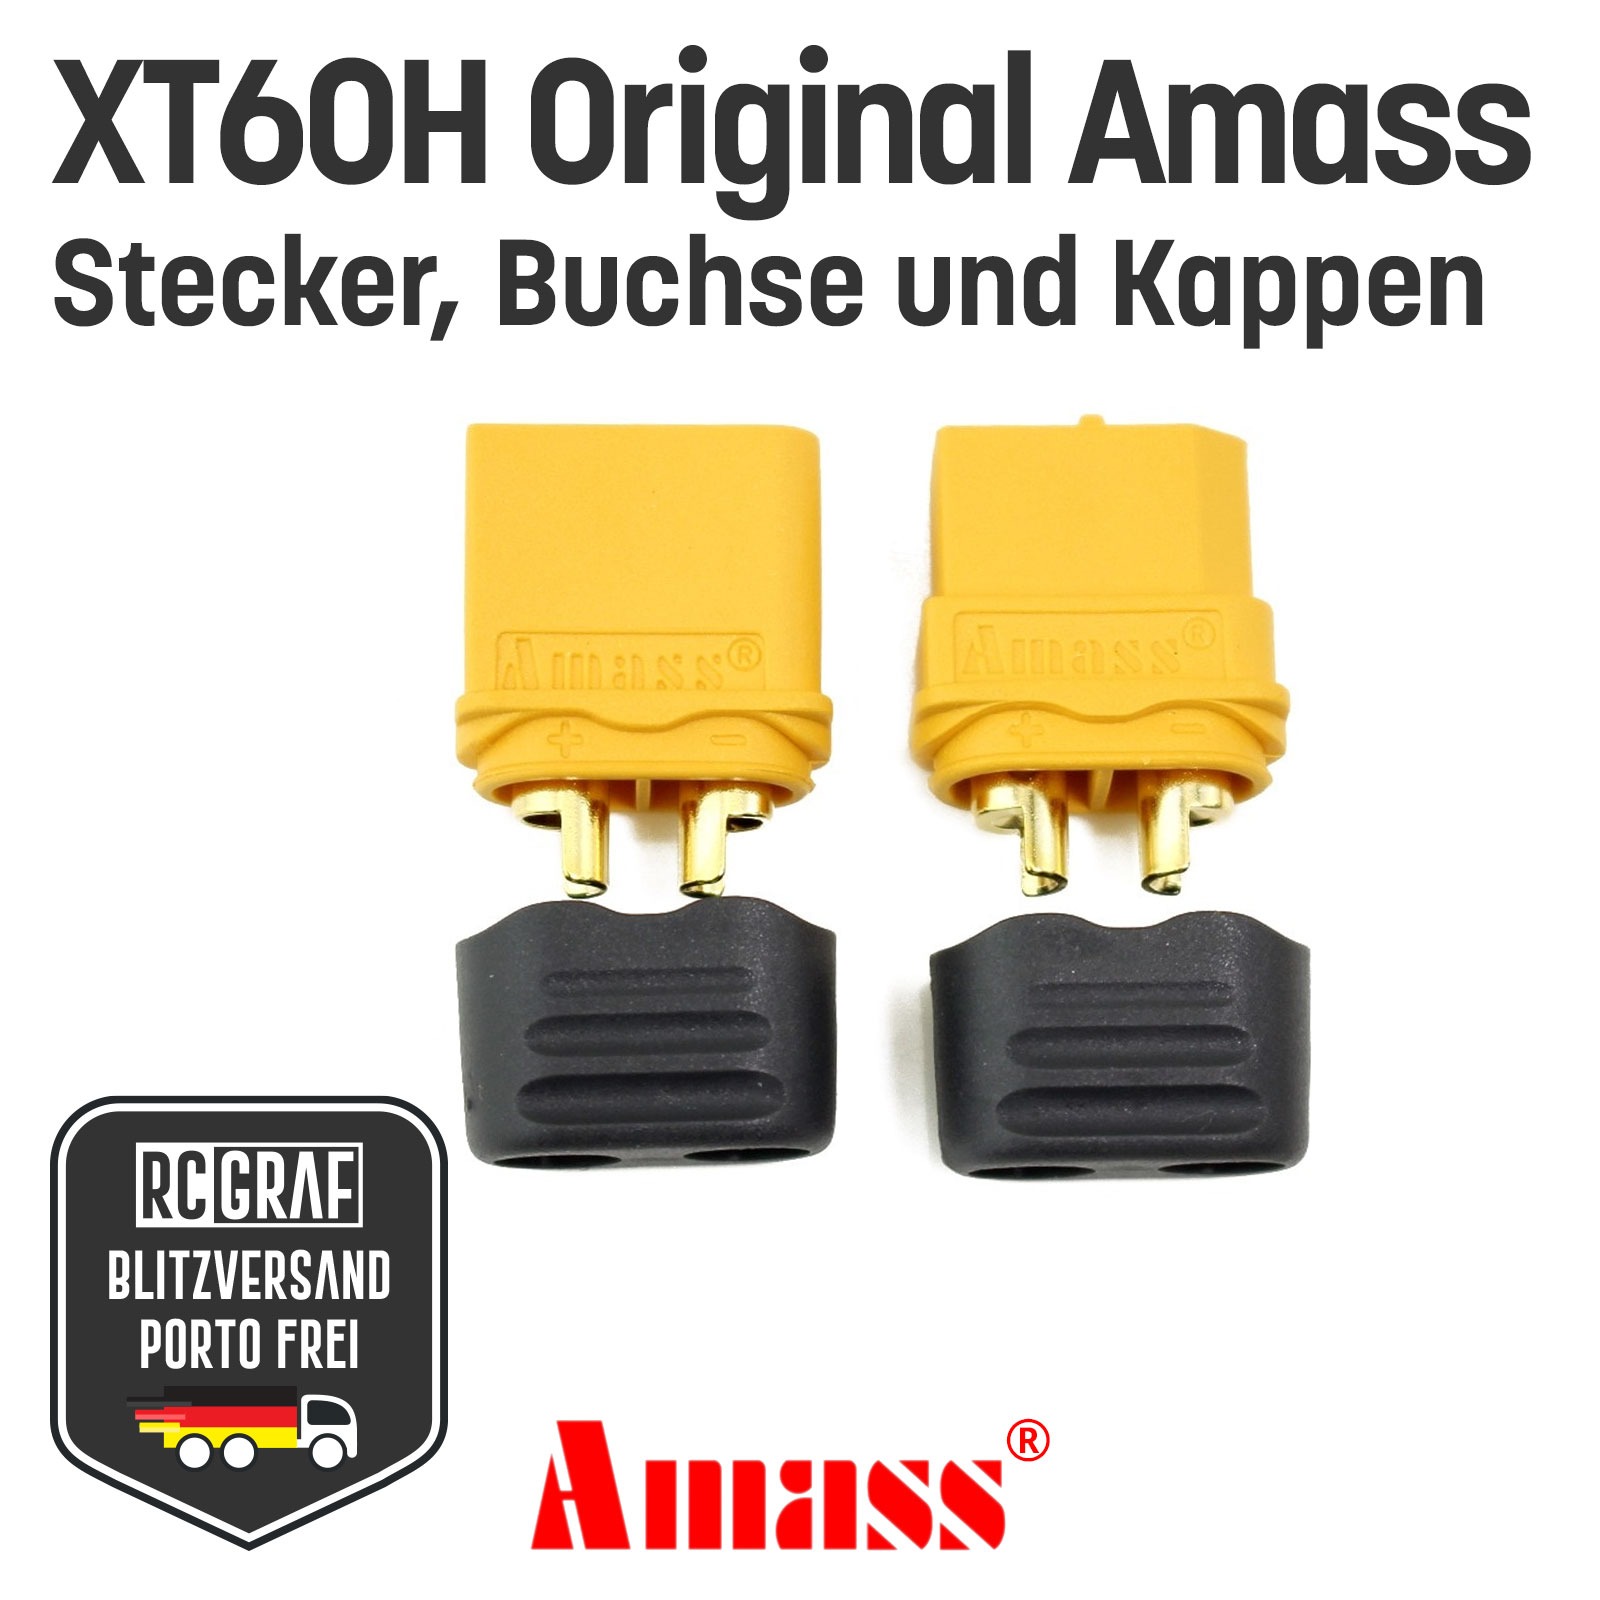 3 Paare XT60H Original Amass XT60 Stecker Buchse Gelb 3